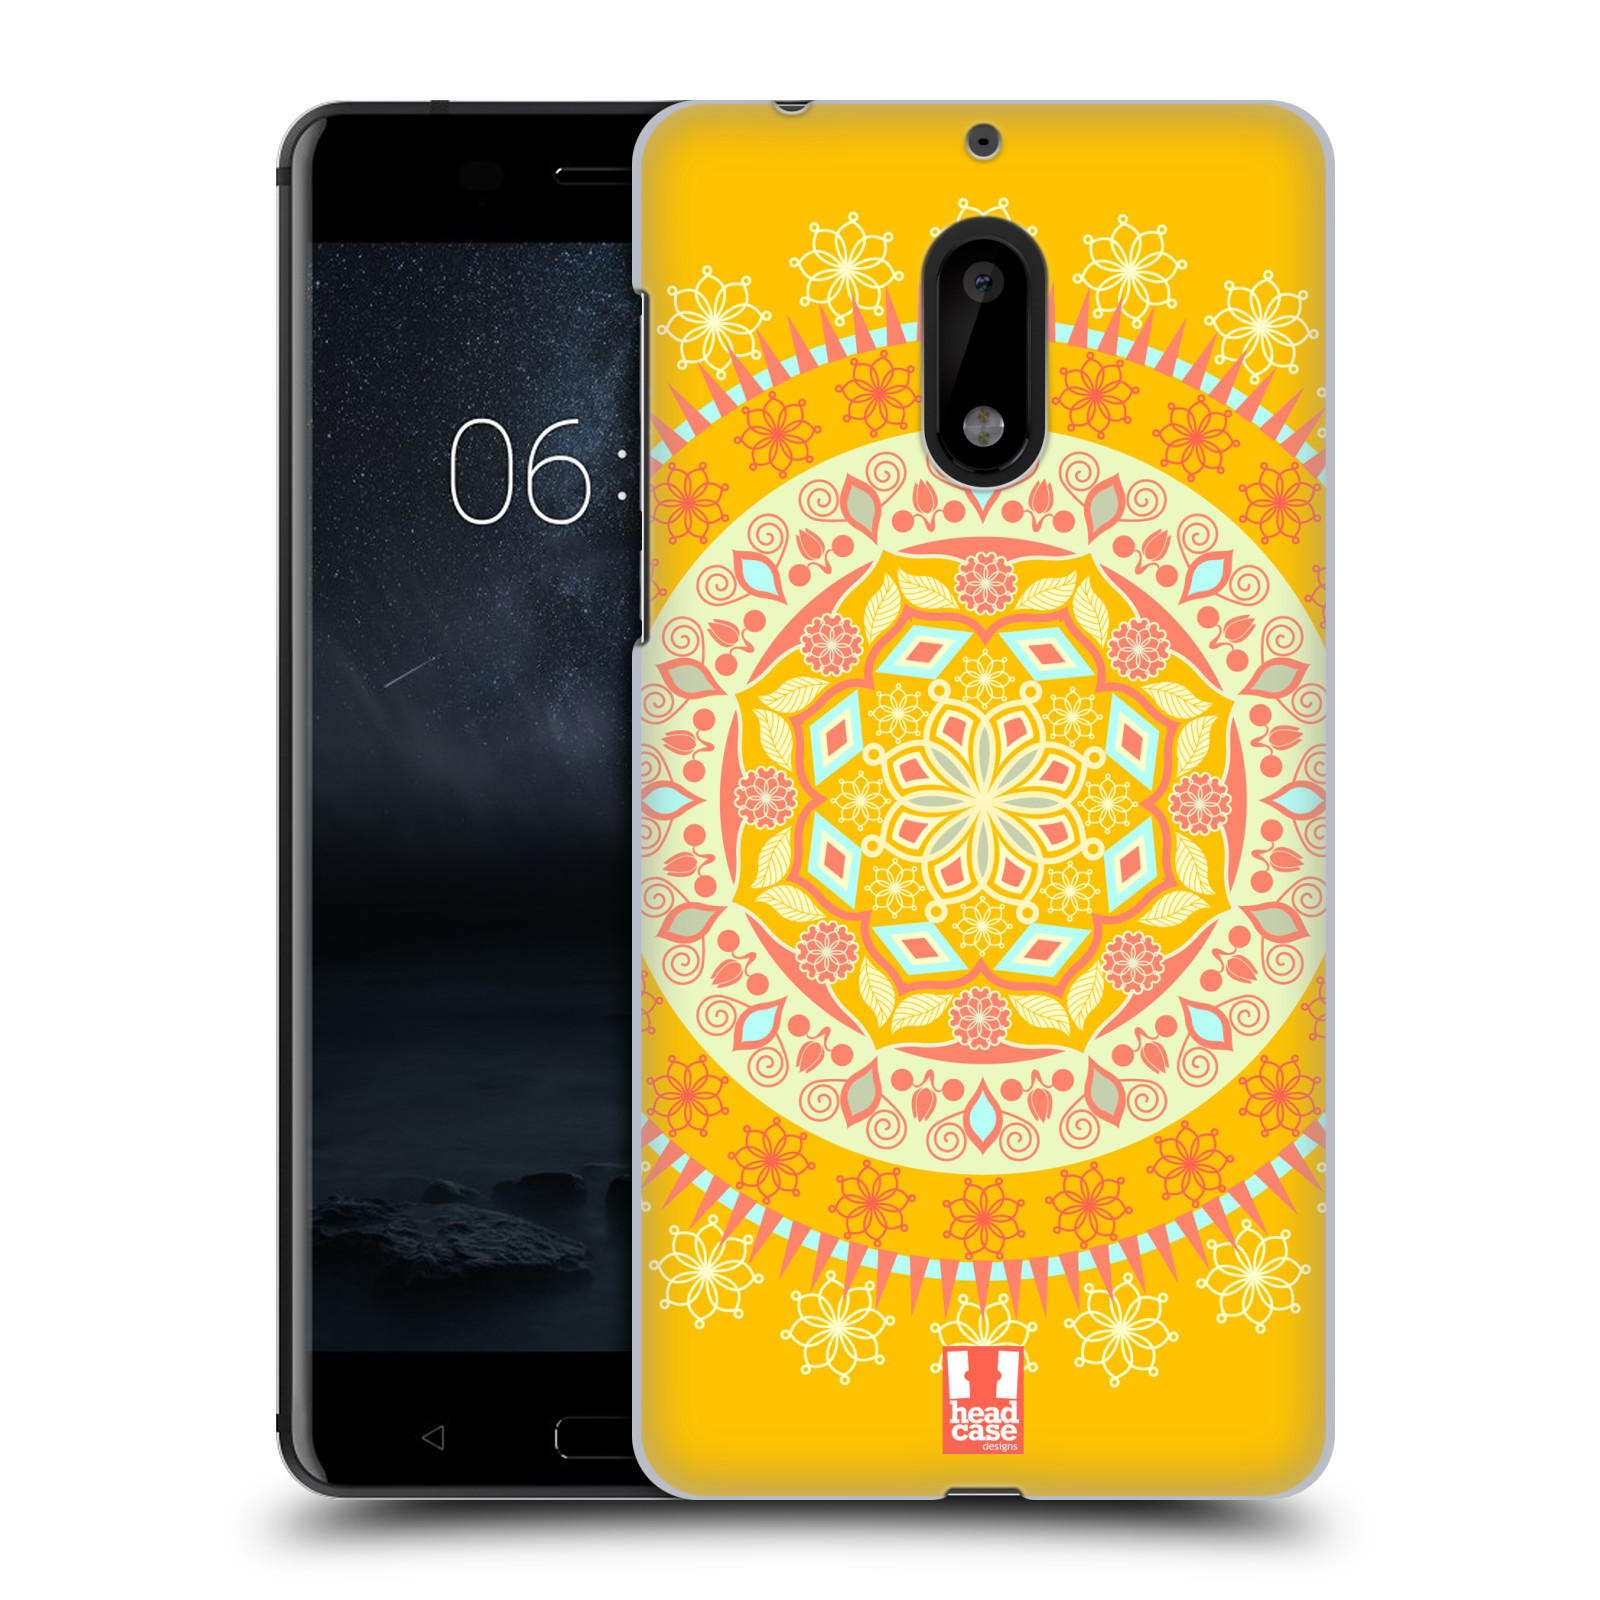 HEAD CASE plastový obal na mobil Nokia 6 vzor Indie Mandala slunce barevný motiv ŽLUTÁ